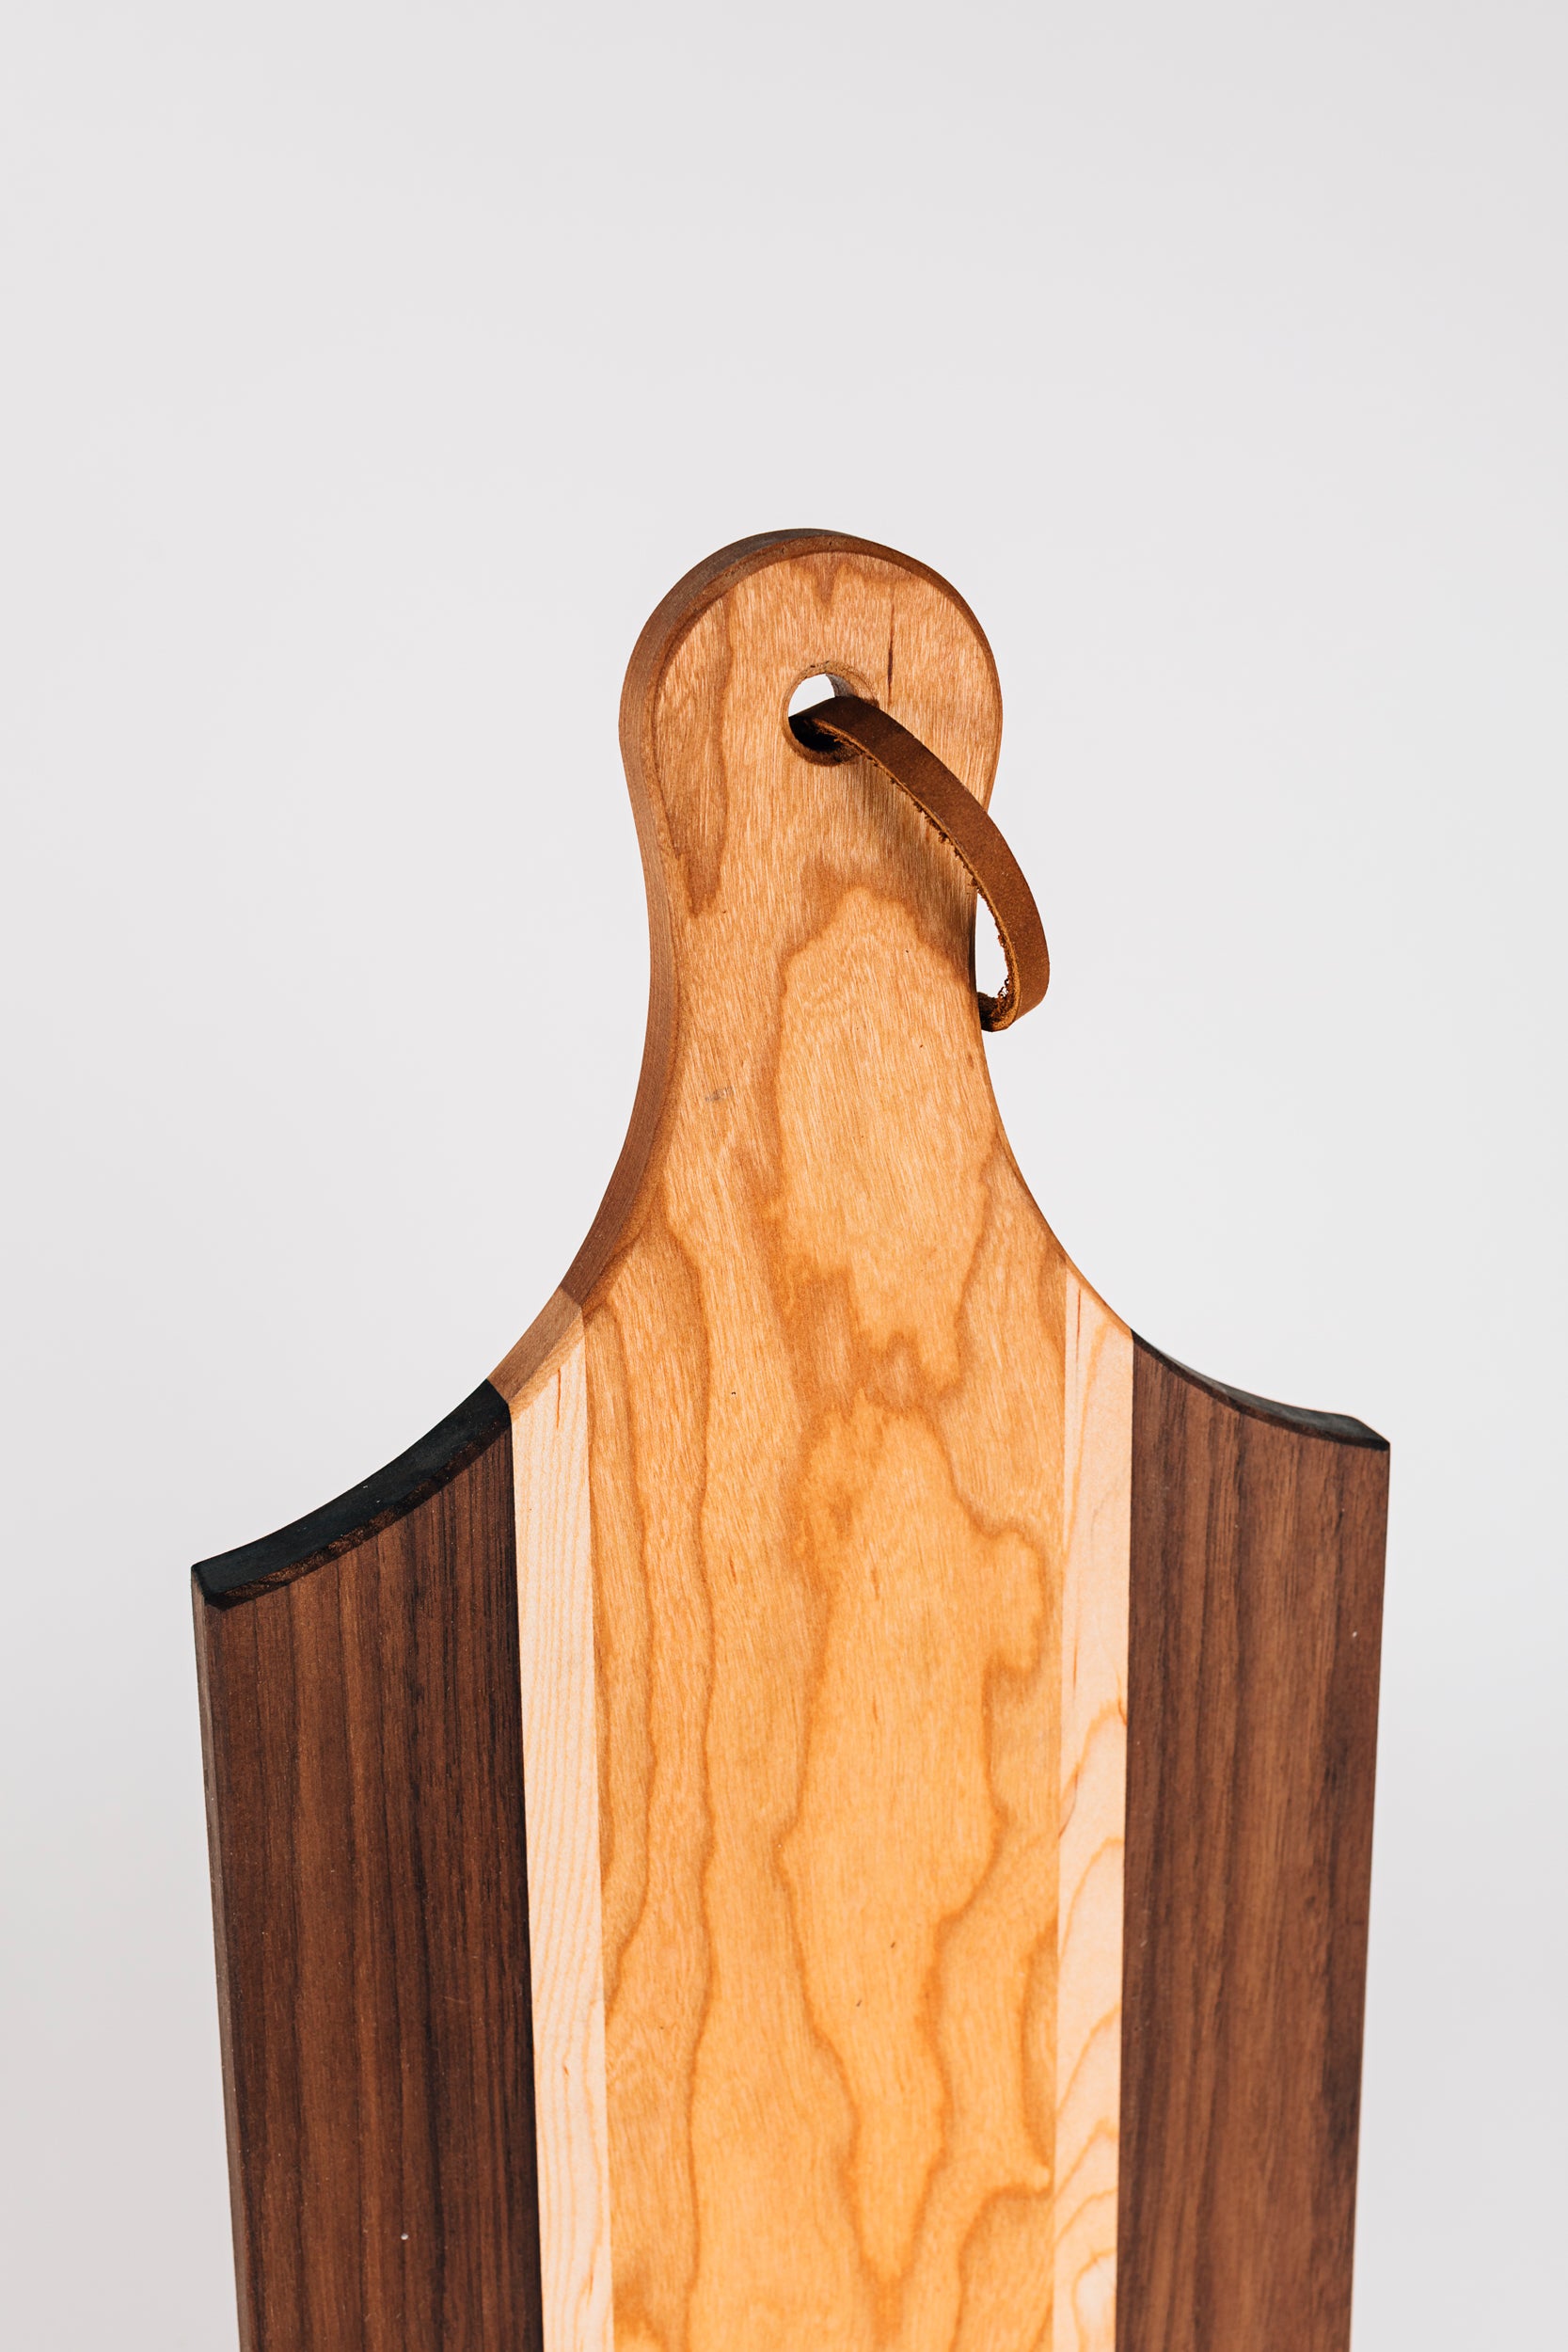 The Triple Wood Cutting Board